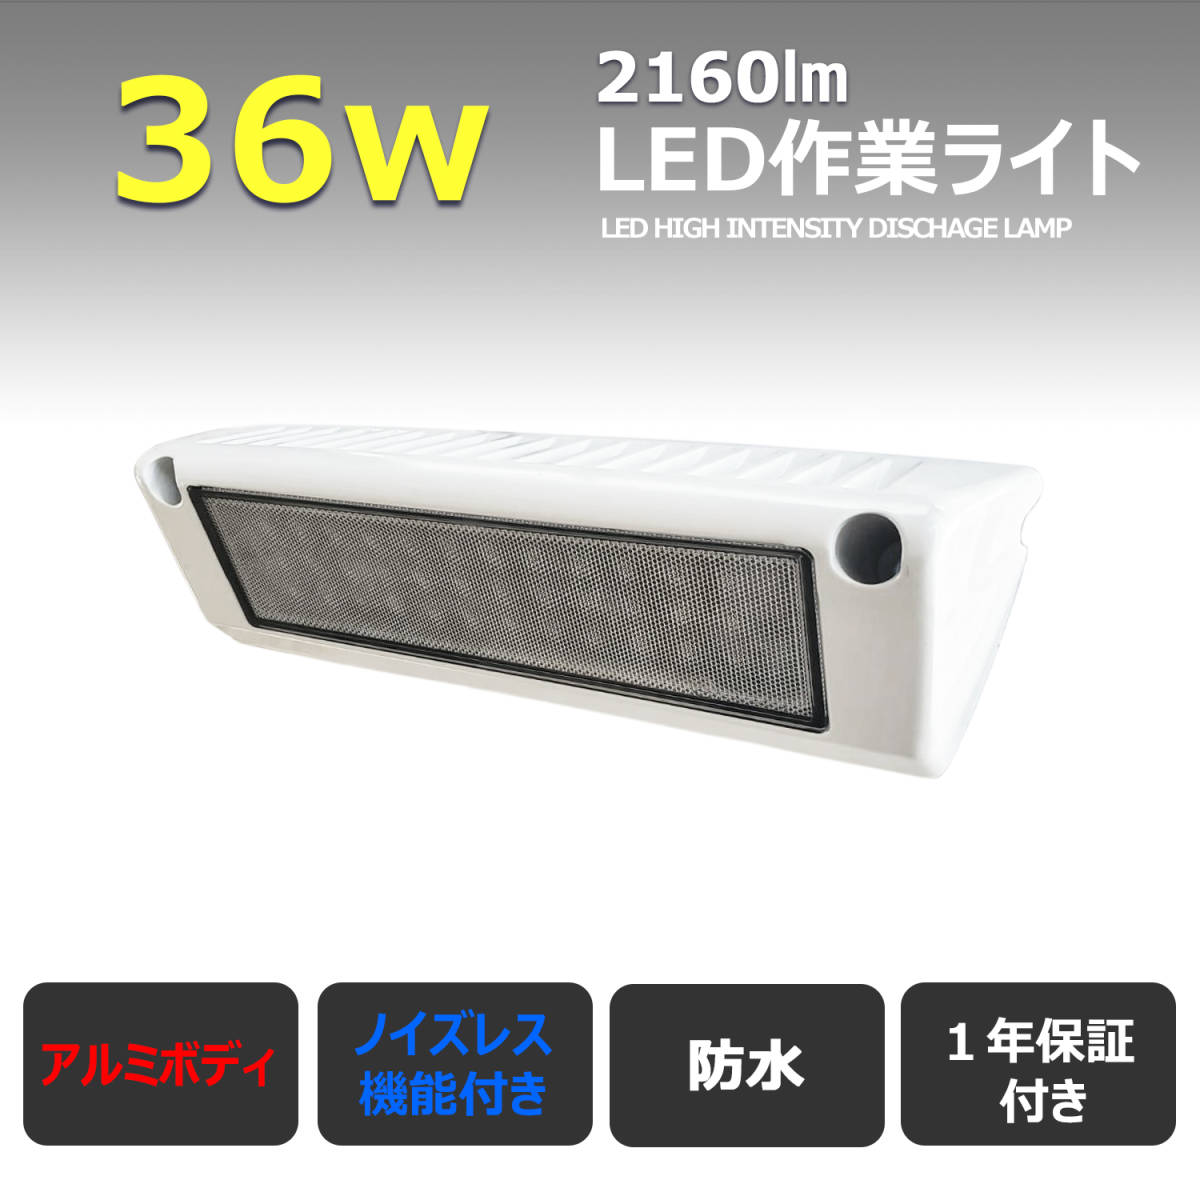 全日本送料無料 36W ワークライト LED作業灯 13x36-36w【2個】白アルミ